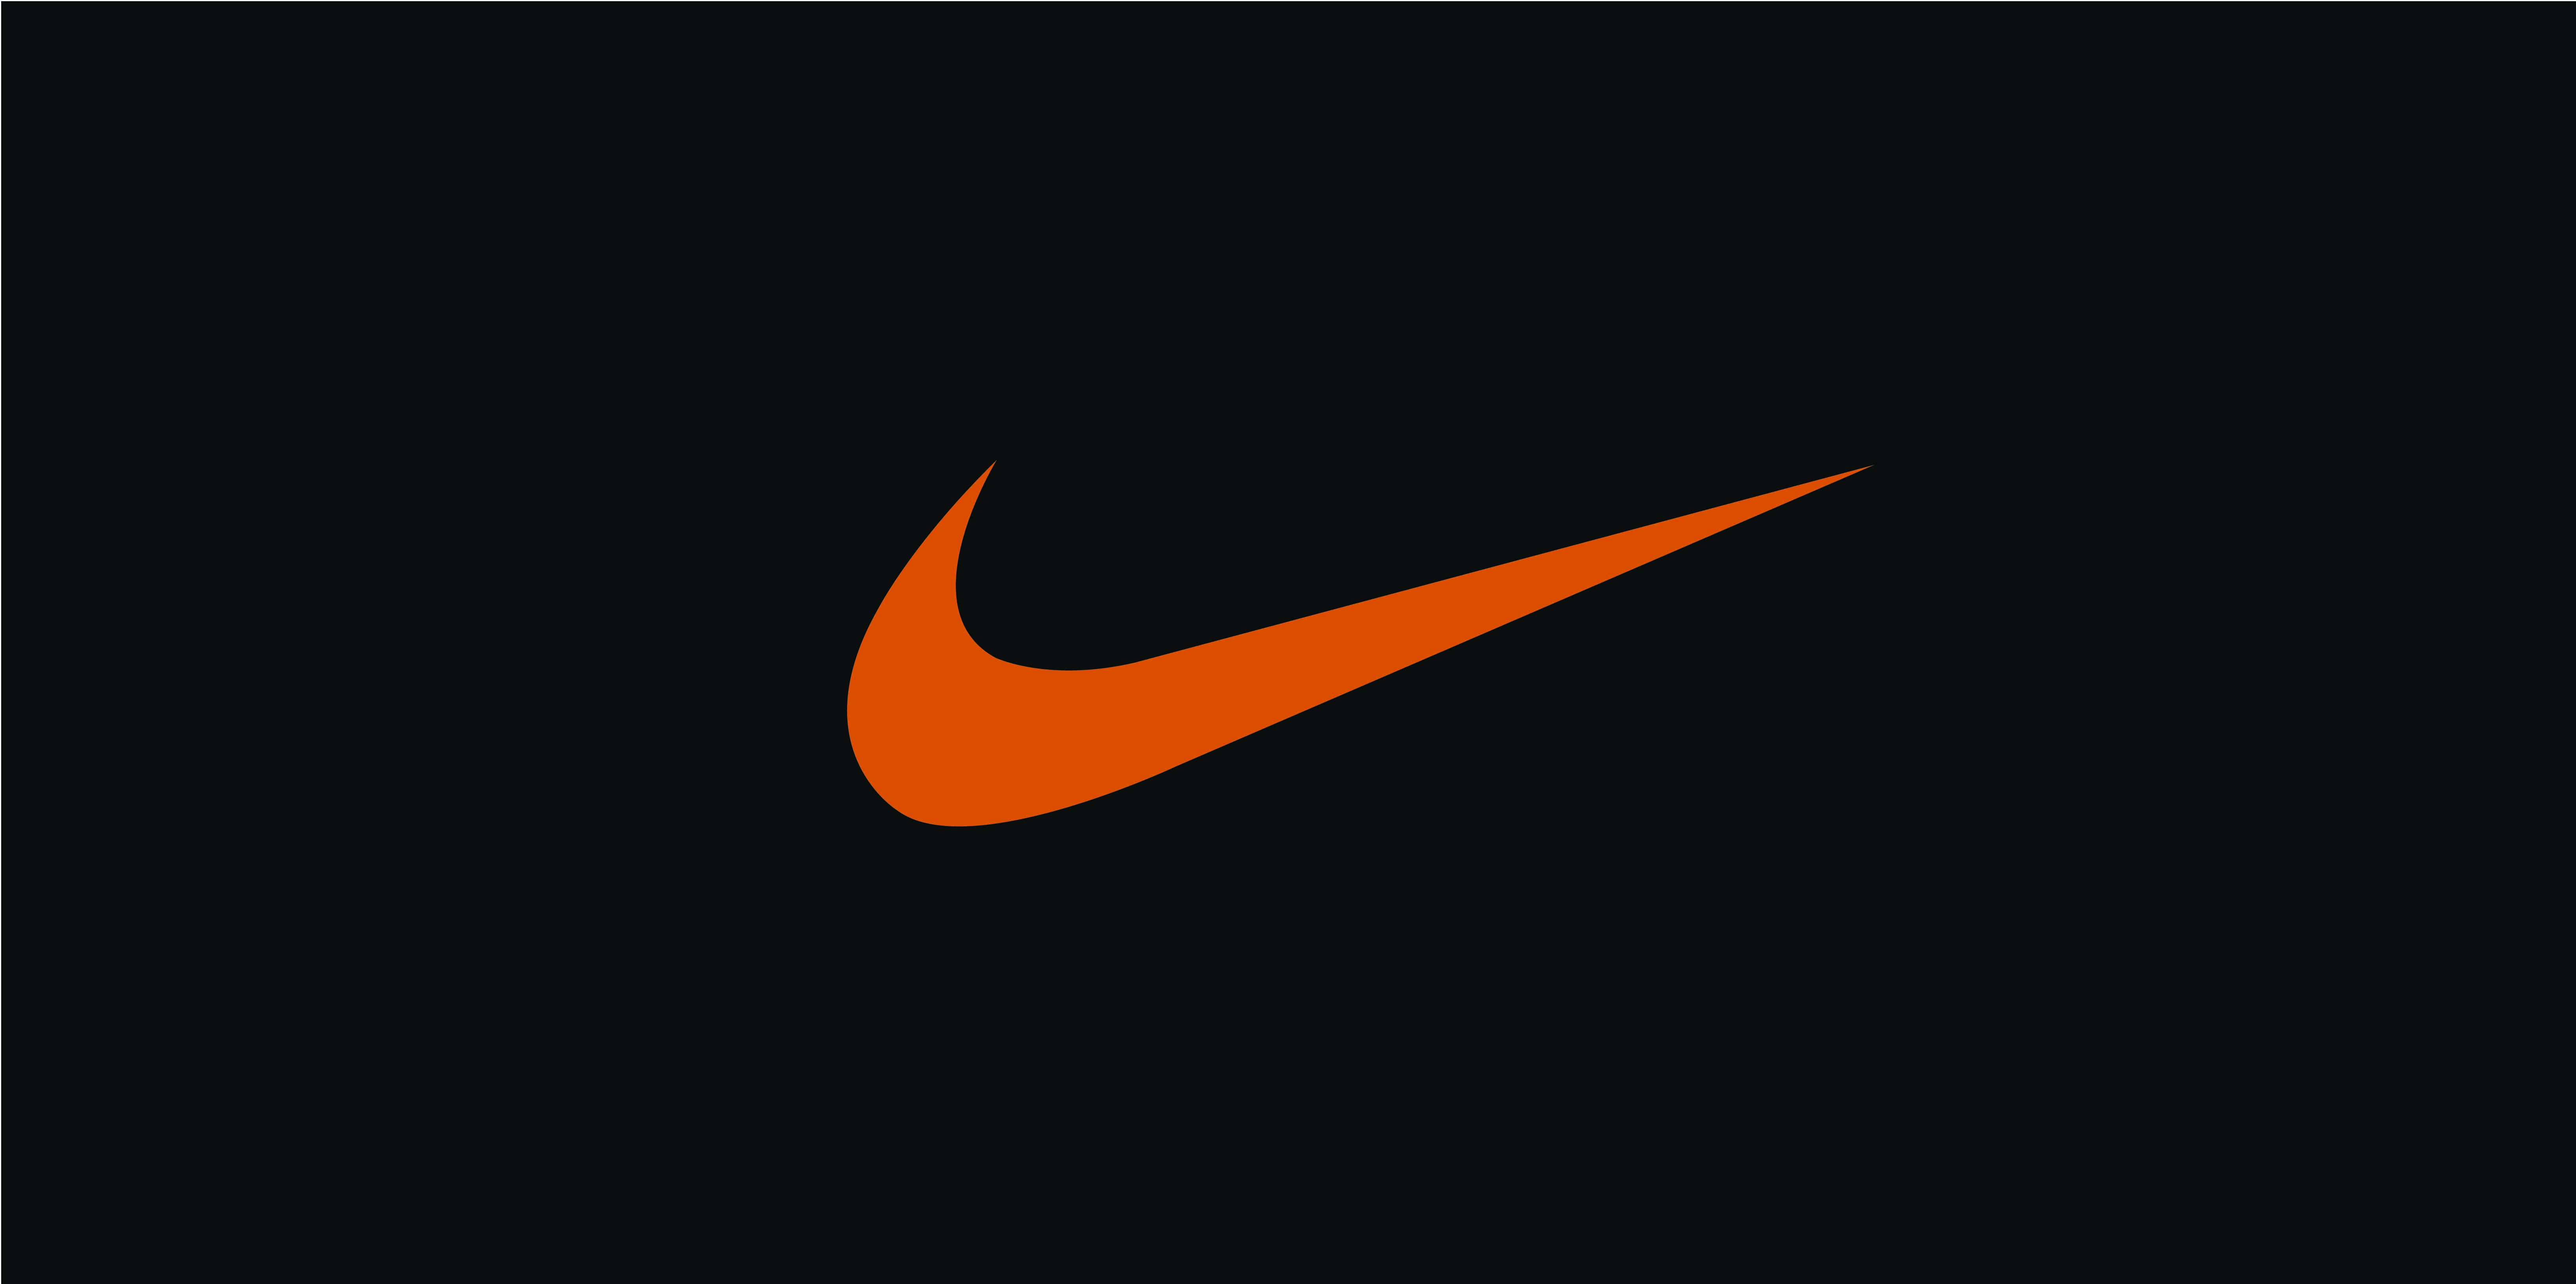 Nike Logo Wallpapers HD 2015 free download